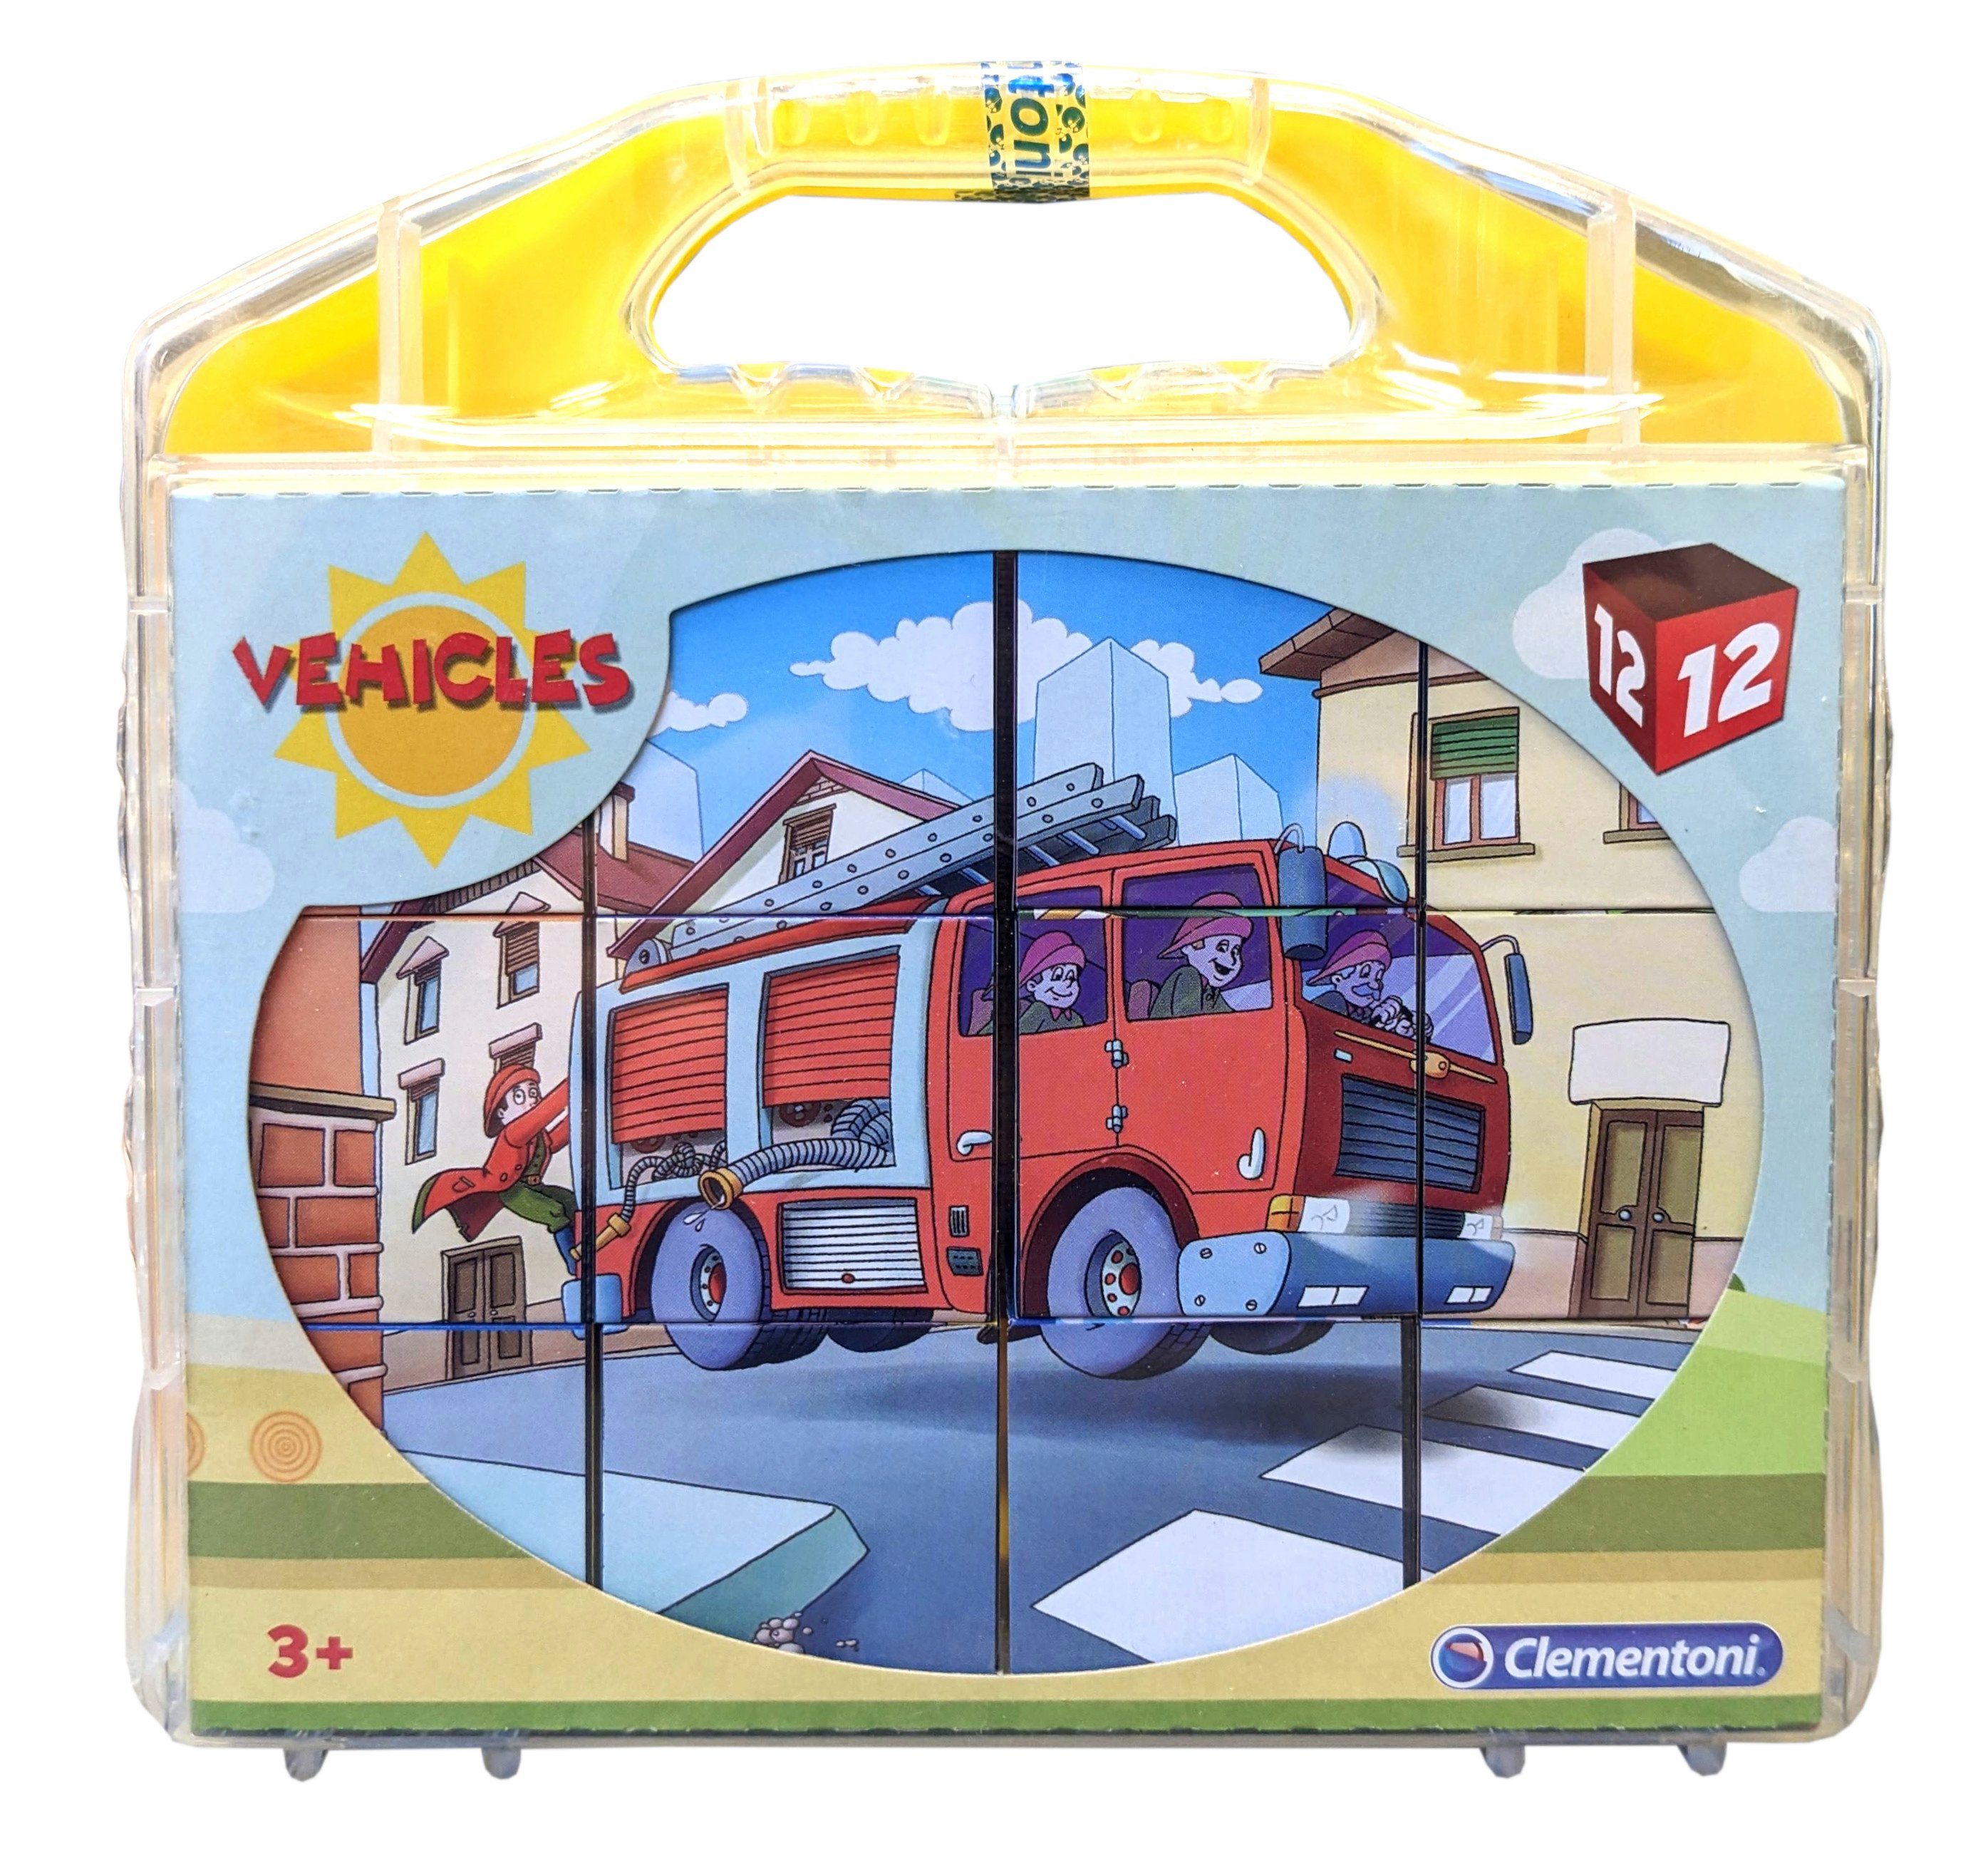 Clementoni® Puzzle Vehicles 12 Puzzleteile (12 Würfelpuzzle im Teile) Koffer Fahrzeuge